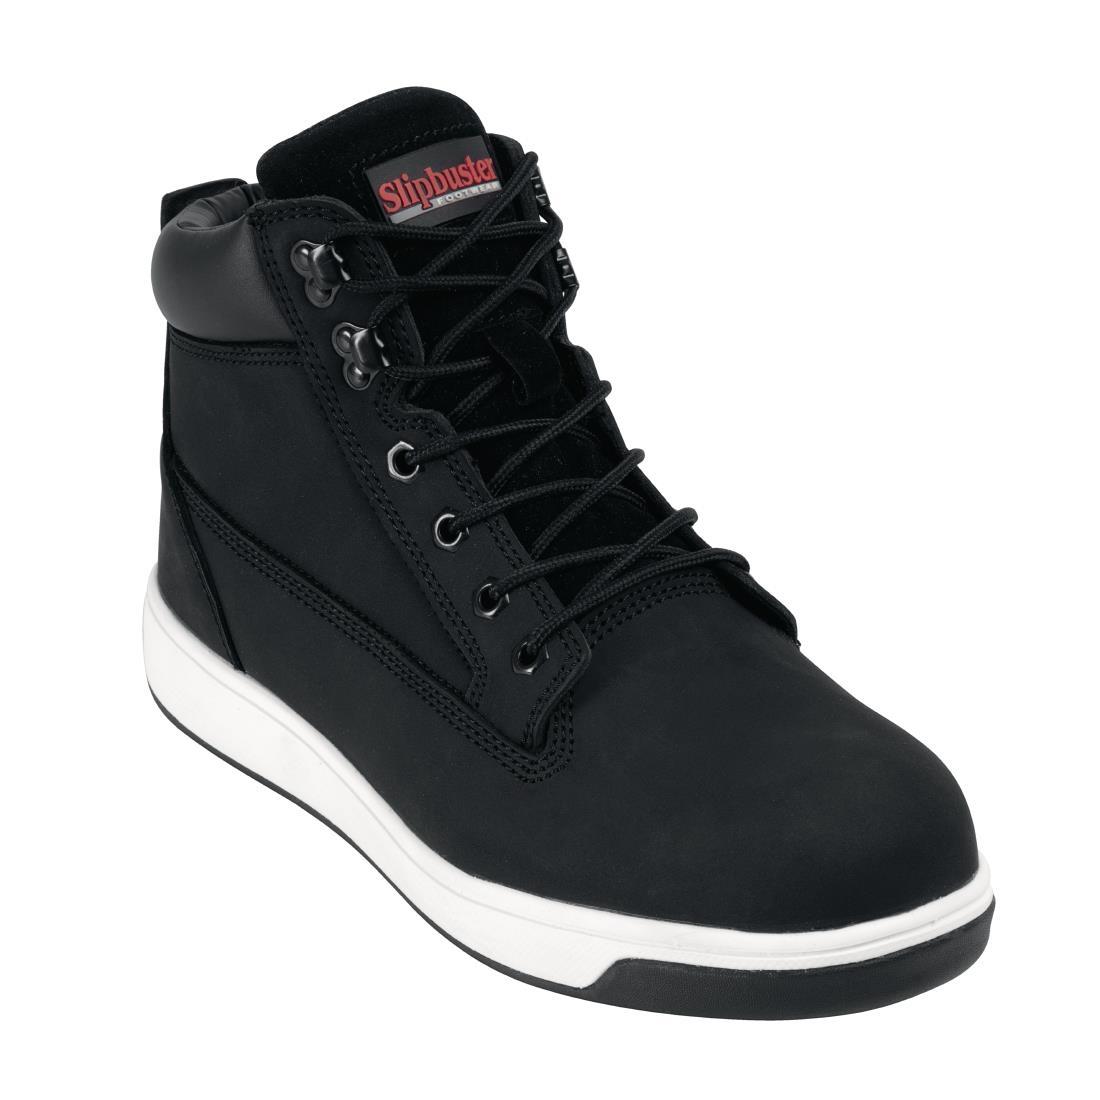 Slipbuster Sneaker Boots Black 42 - BB422-42  - 1